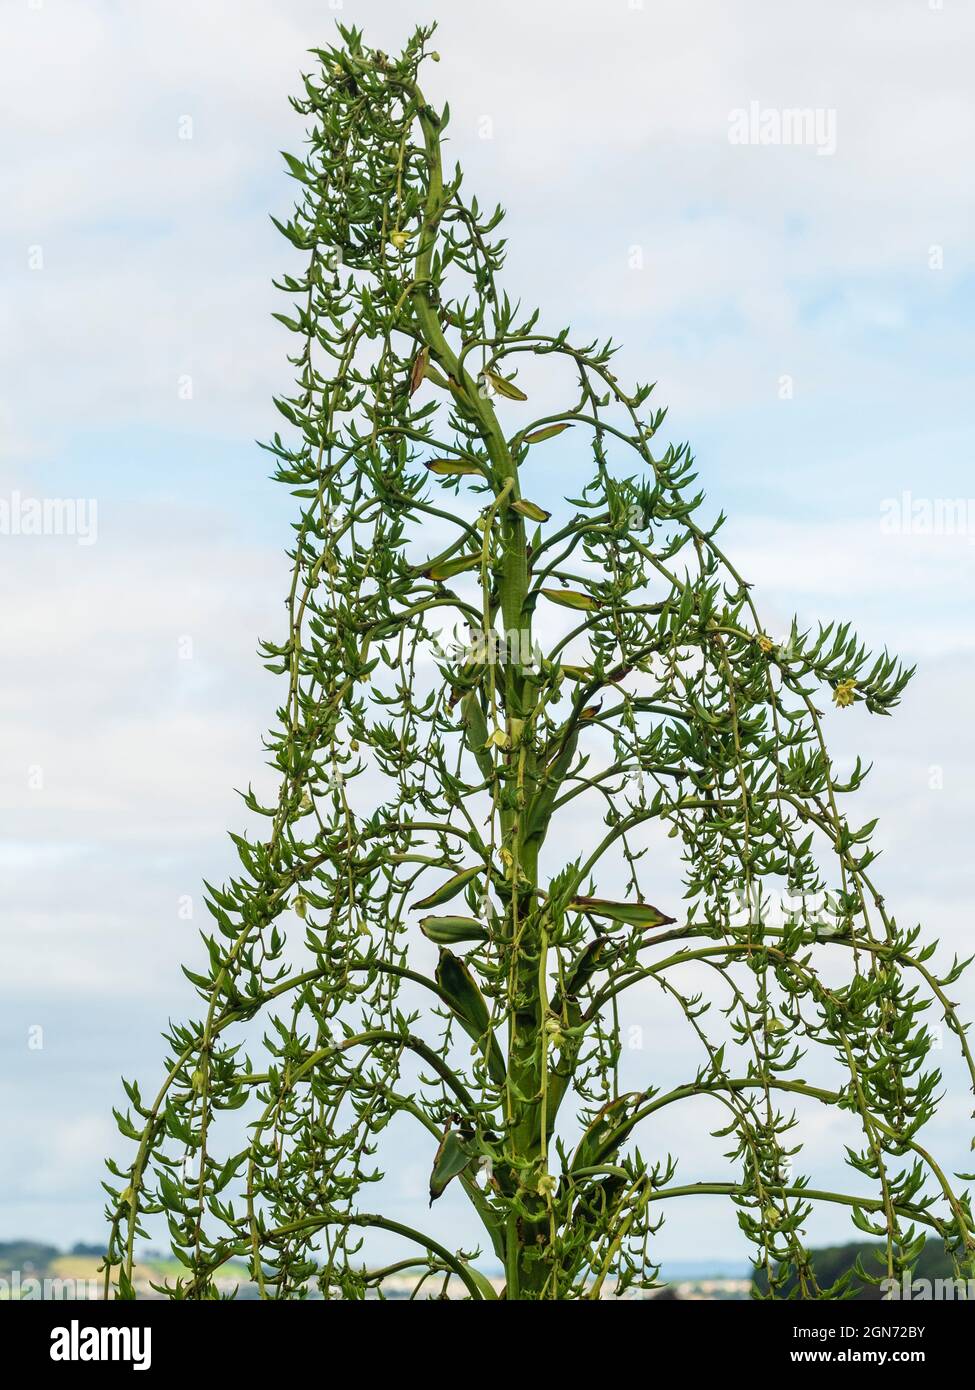 Panicule de fleur géante de l'exotique Yucca relative Furcraea longaeva montrant des bulbilles en développement Banque D'Images